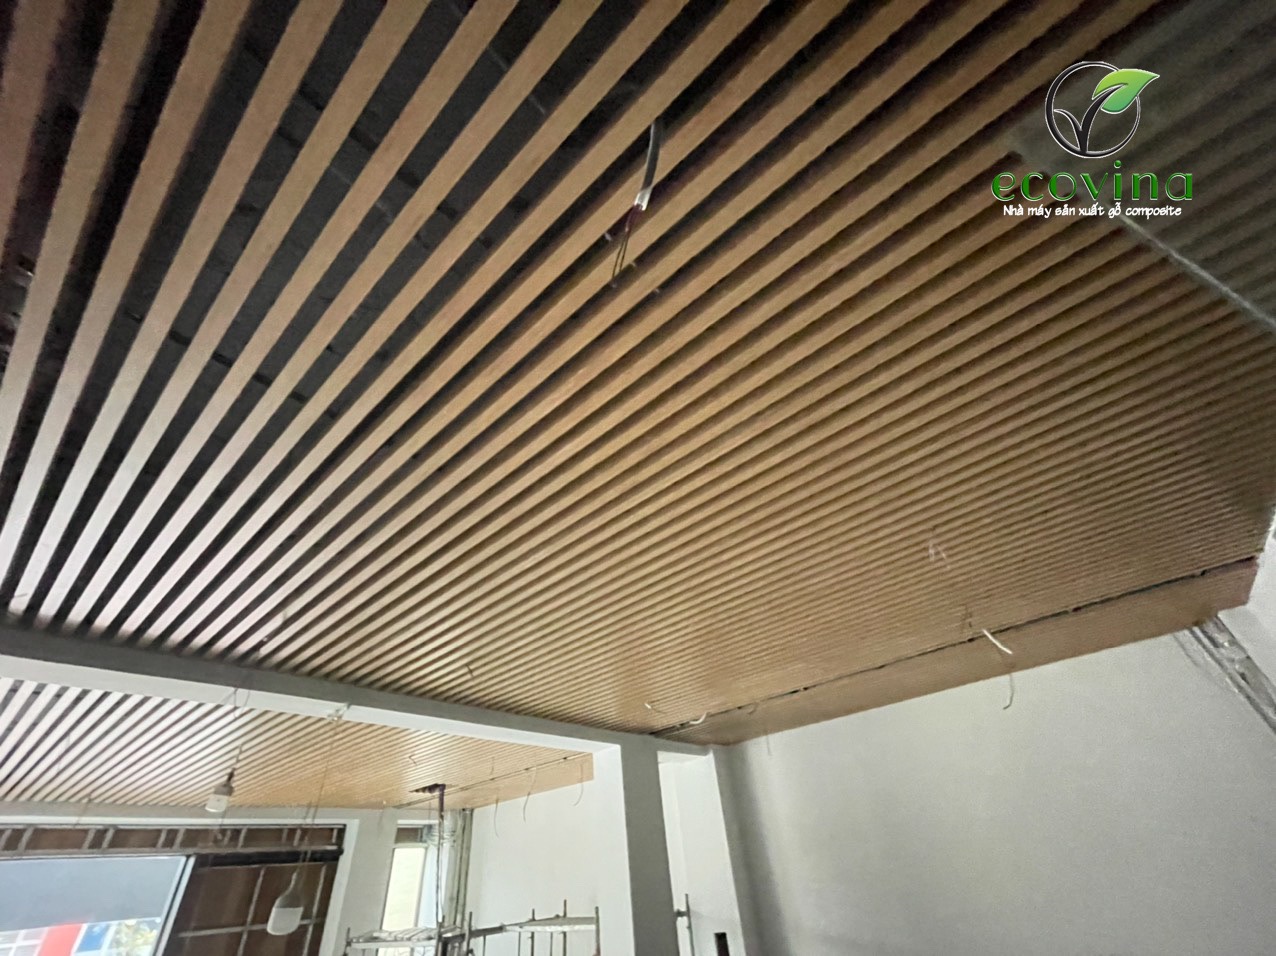 Trần nan gỗ nhựa composite Ecovina tại công trình 74 Bà Triệu ...